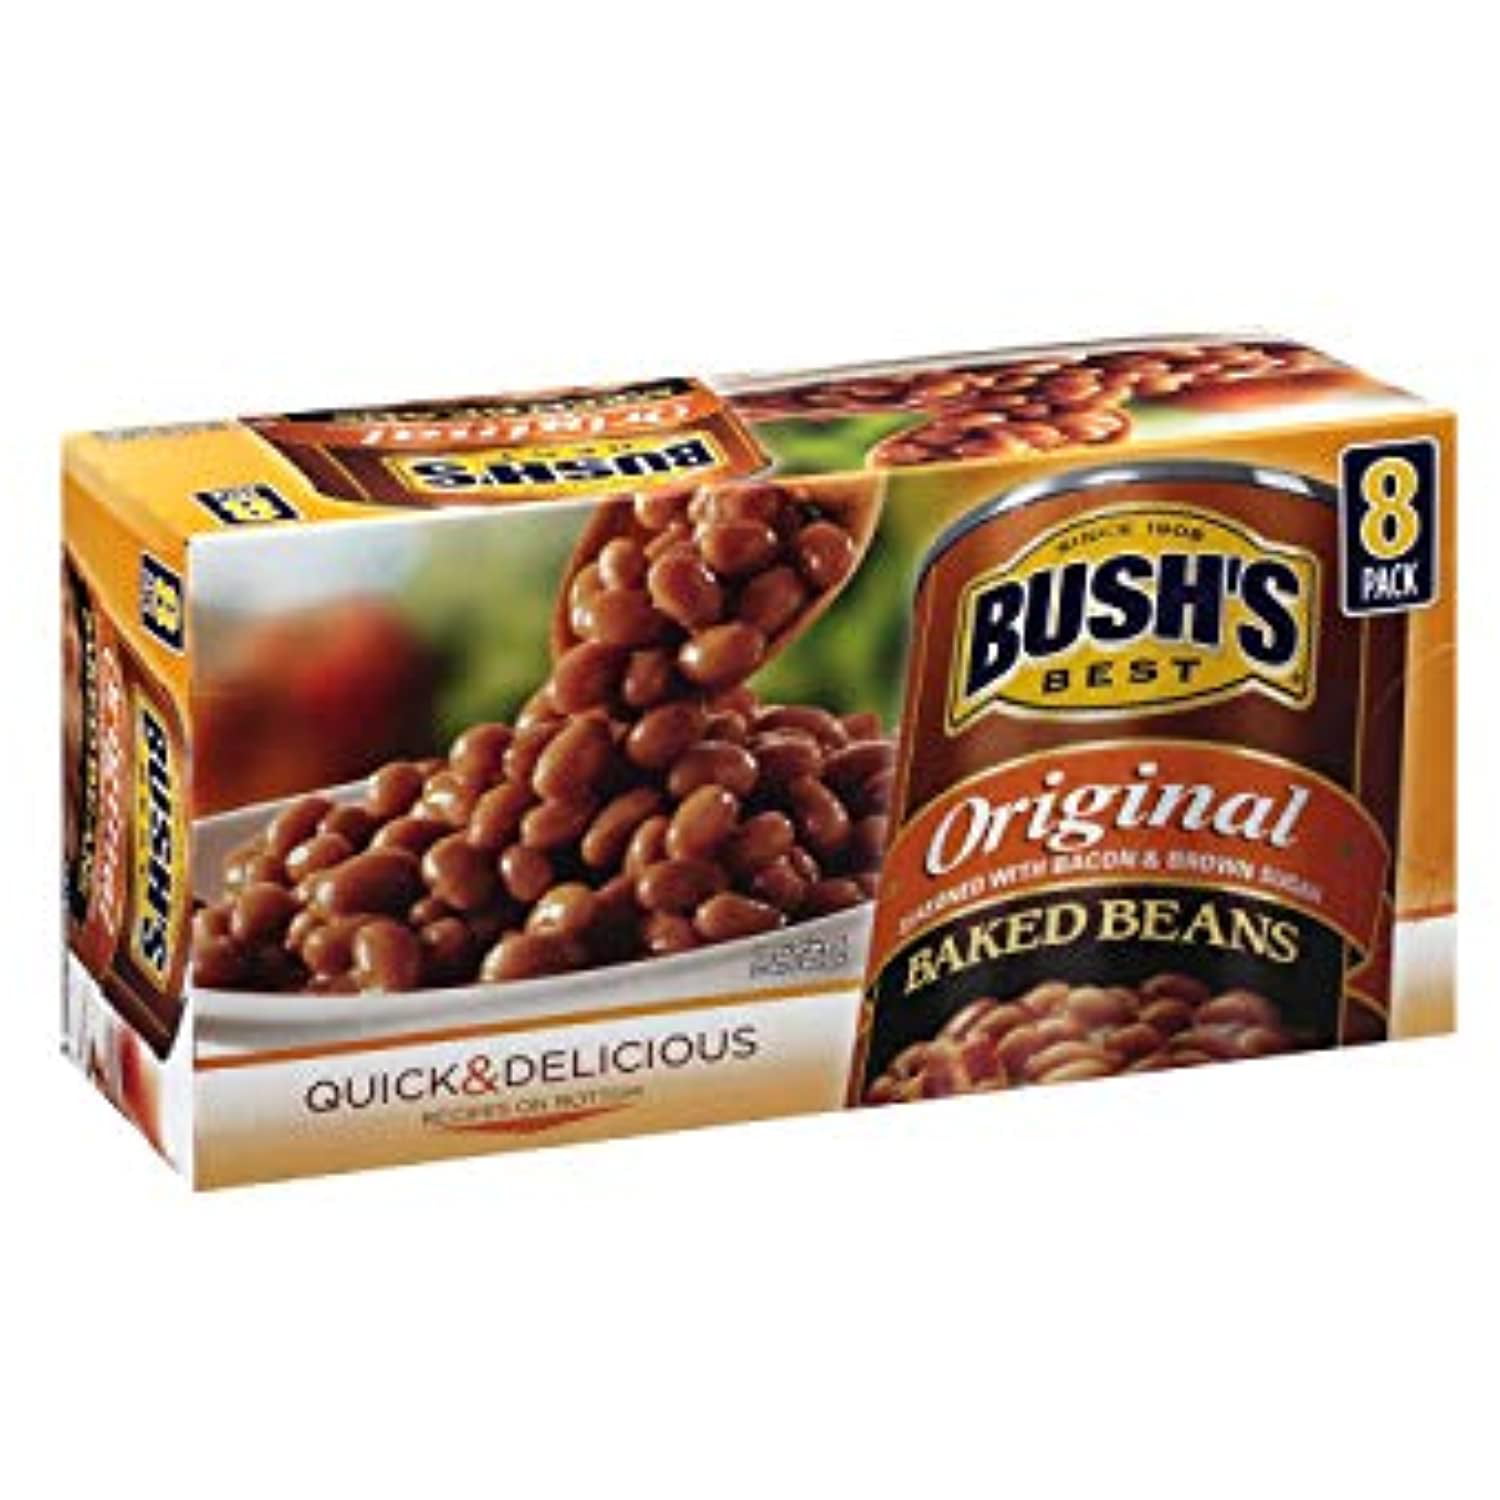 8 pk./16.5 oz pack of 2***NEW*** Bush's Original Baked Beans 